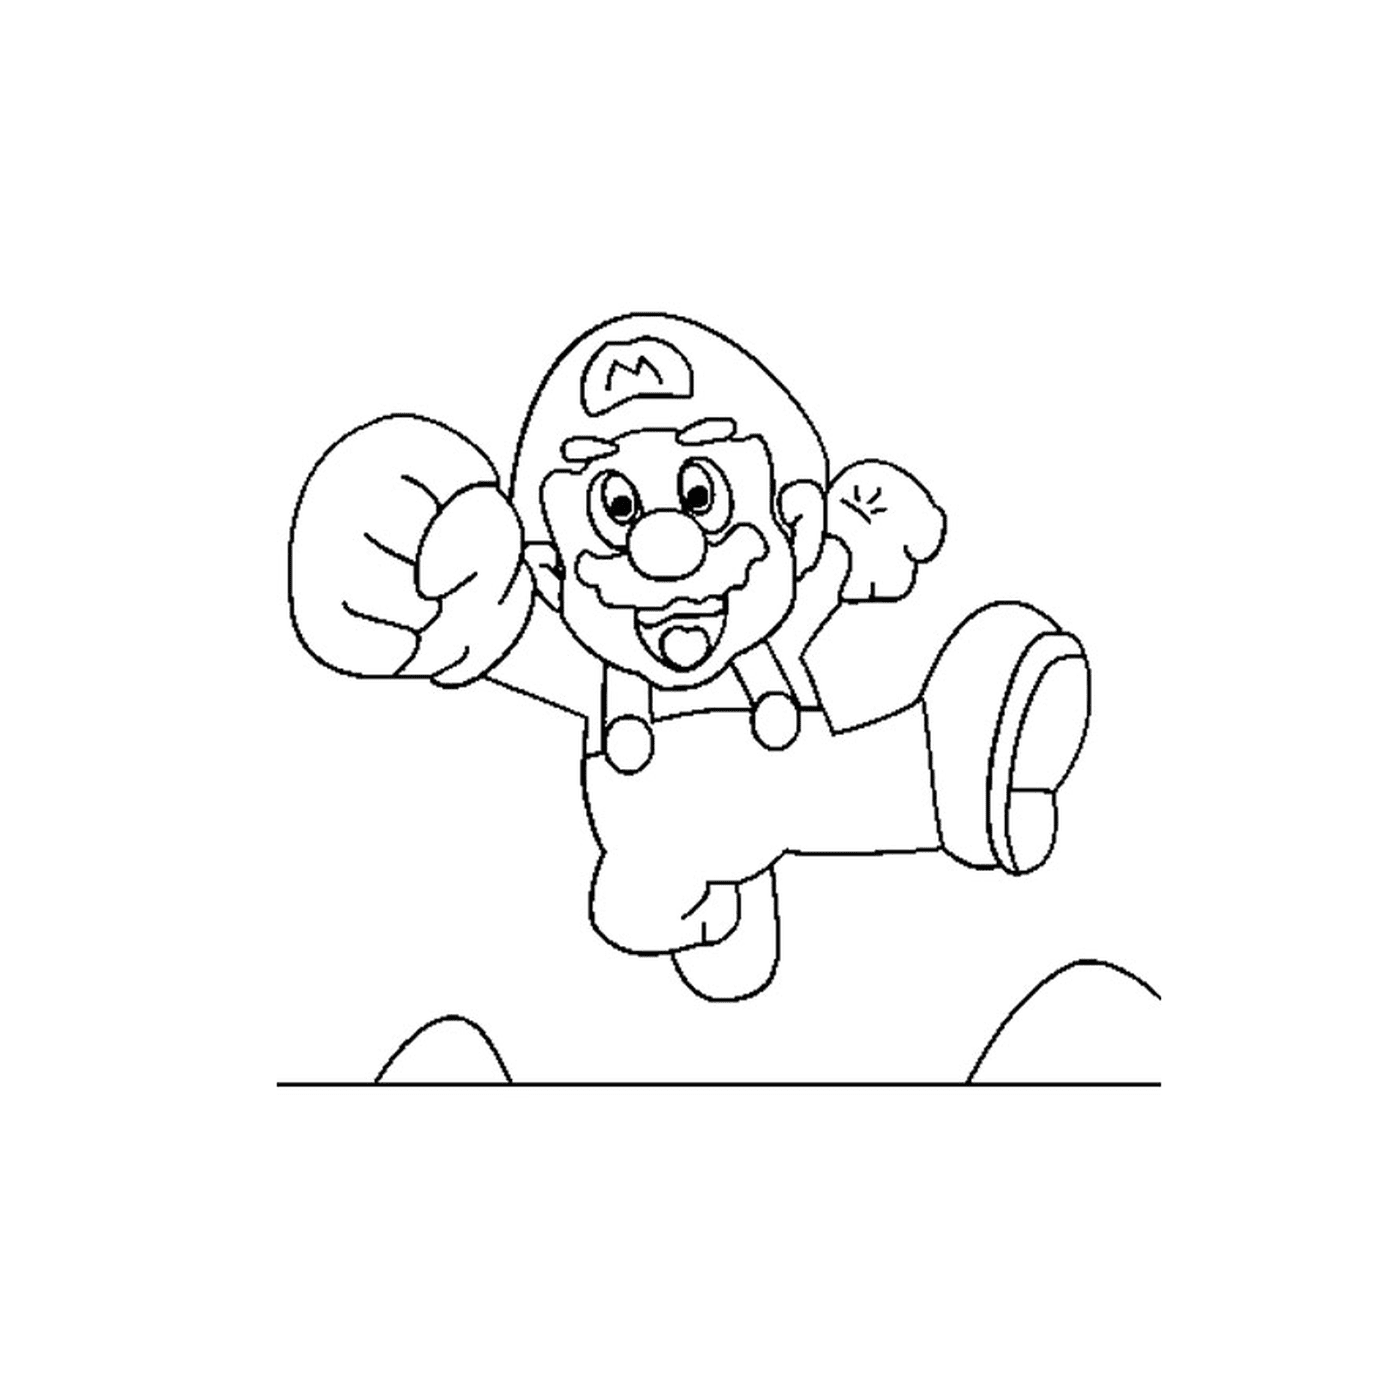  Super Mario 